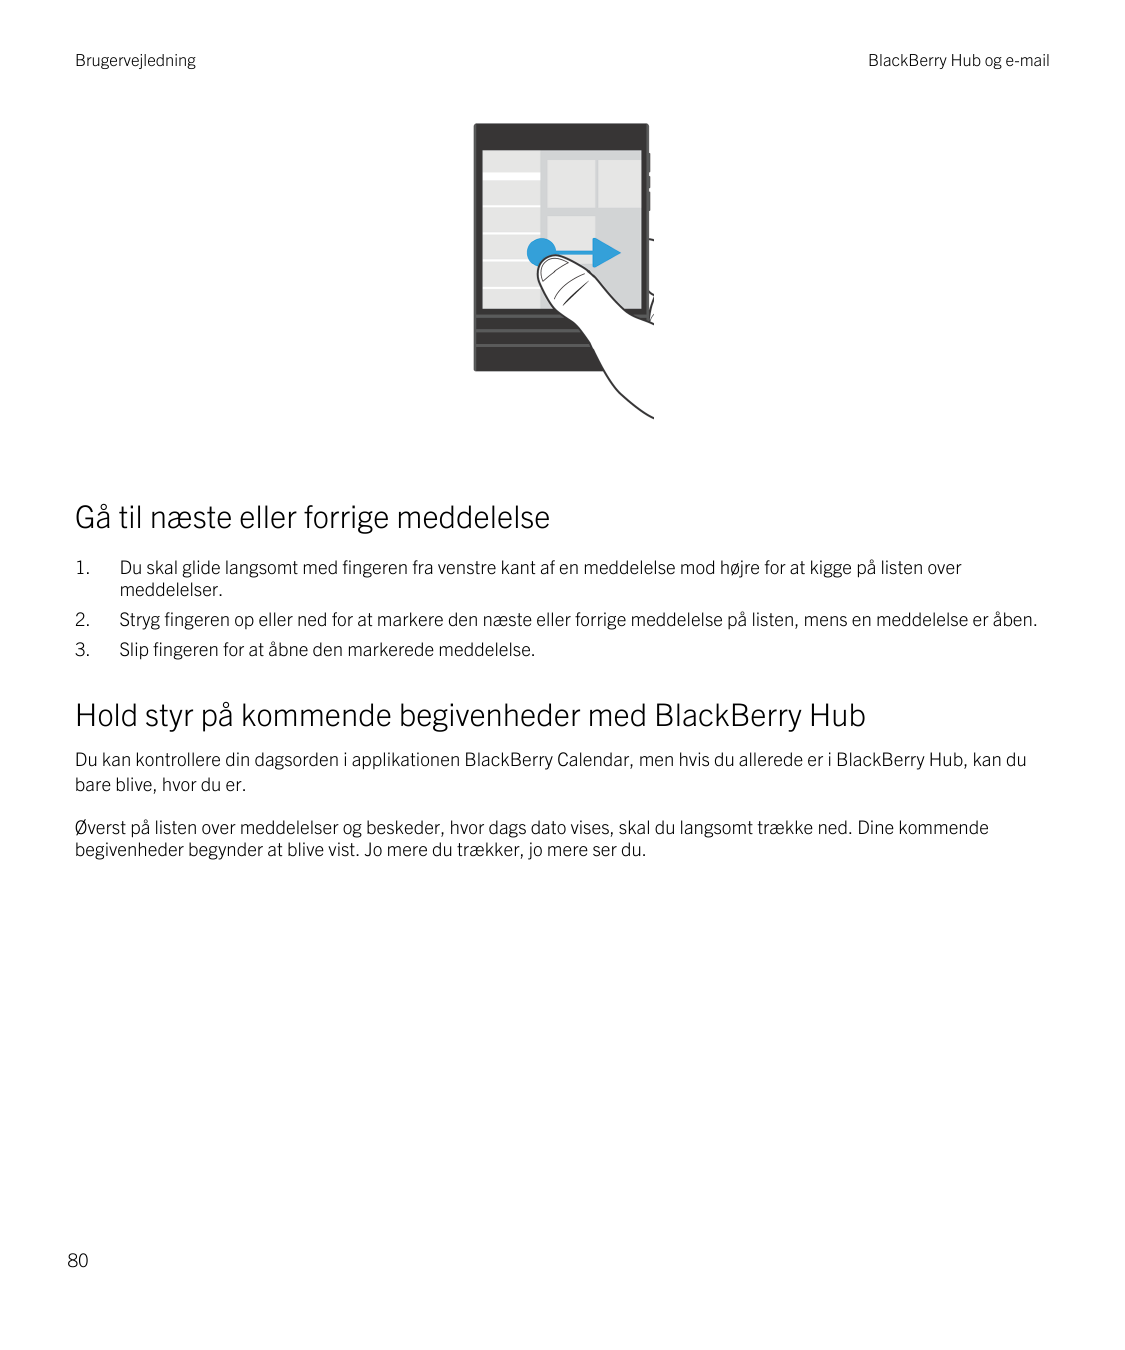 BrugervejledningBlackBerry Hub og e-mailGå til næste eller forrige meddelelse1.Du skal glide langsomt med fingeren fra venstre k